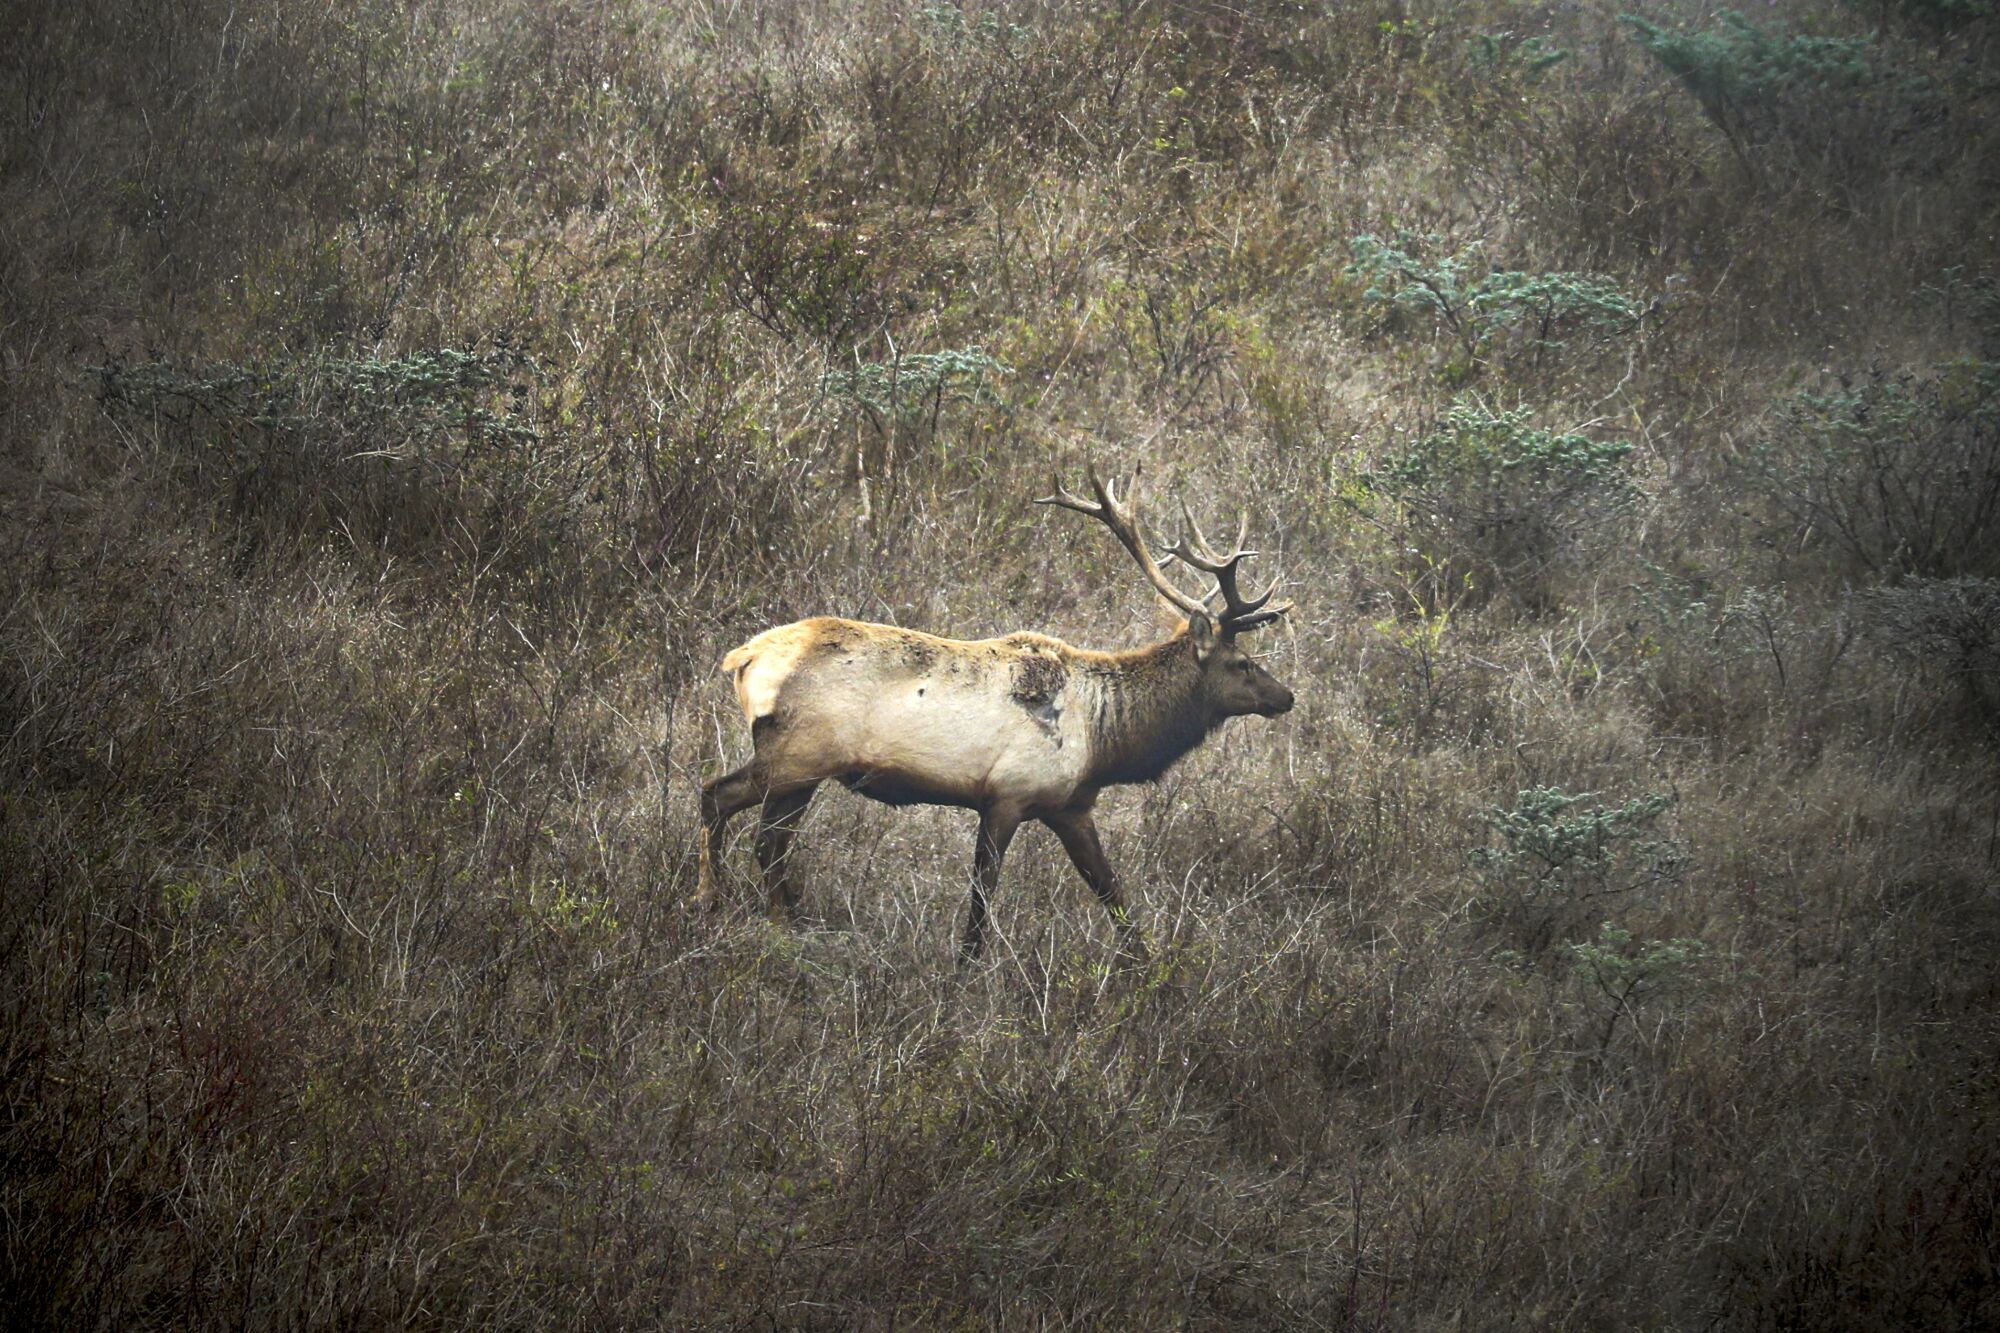 Tule elk roams in its reserve in Point Reyes National Seashore.